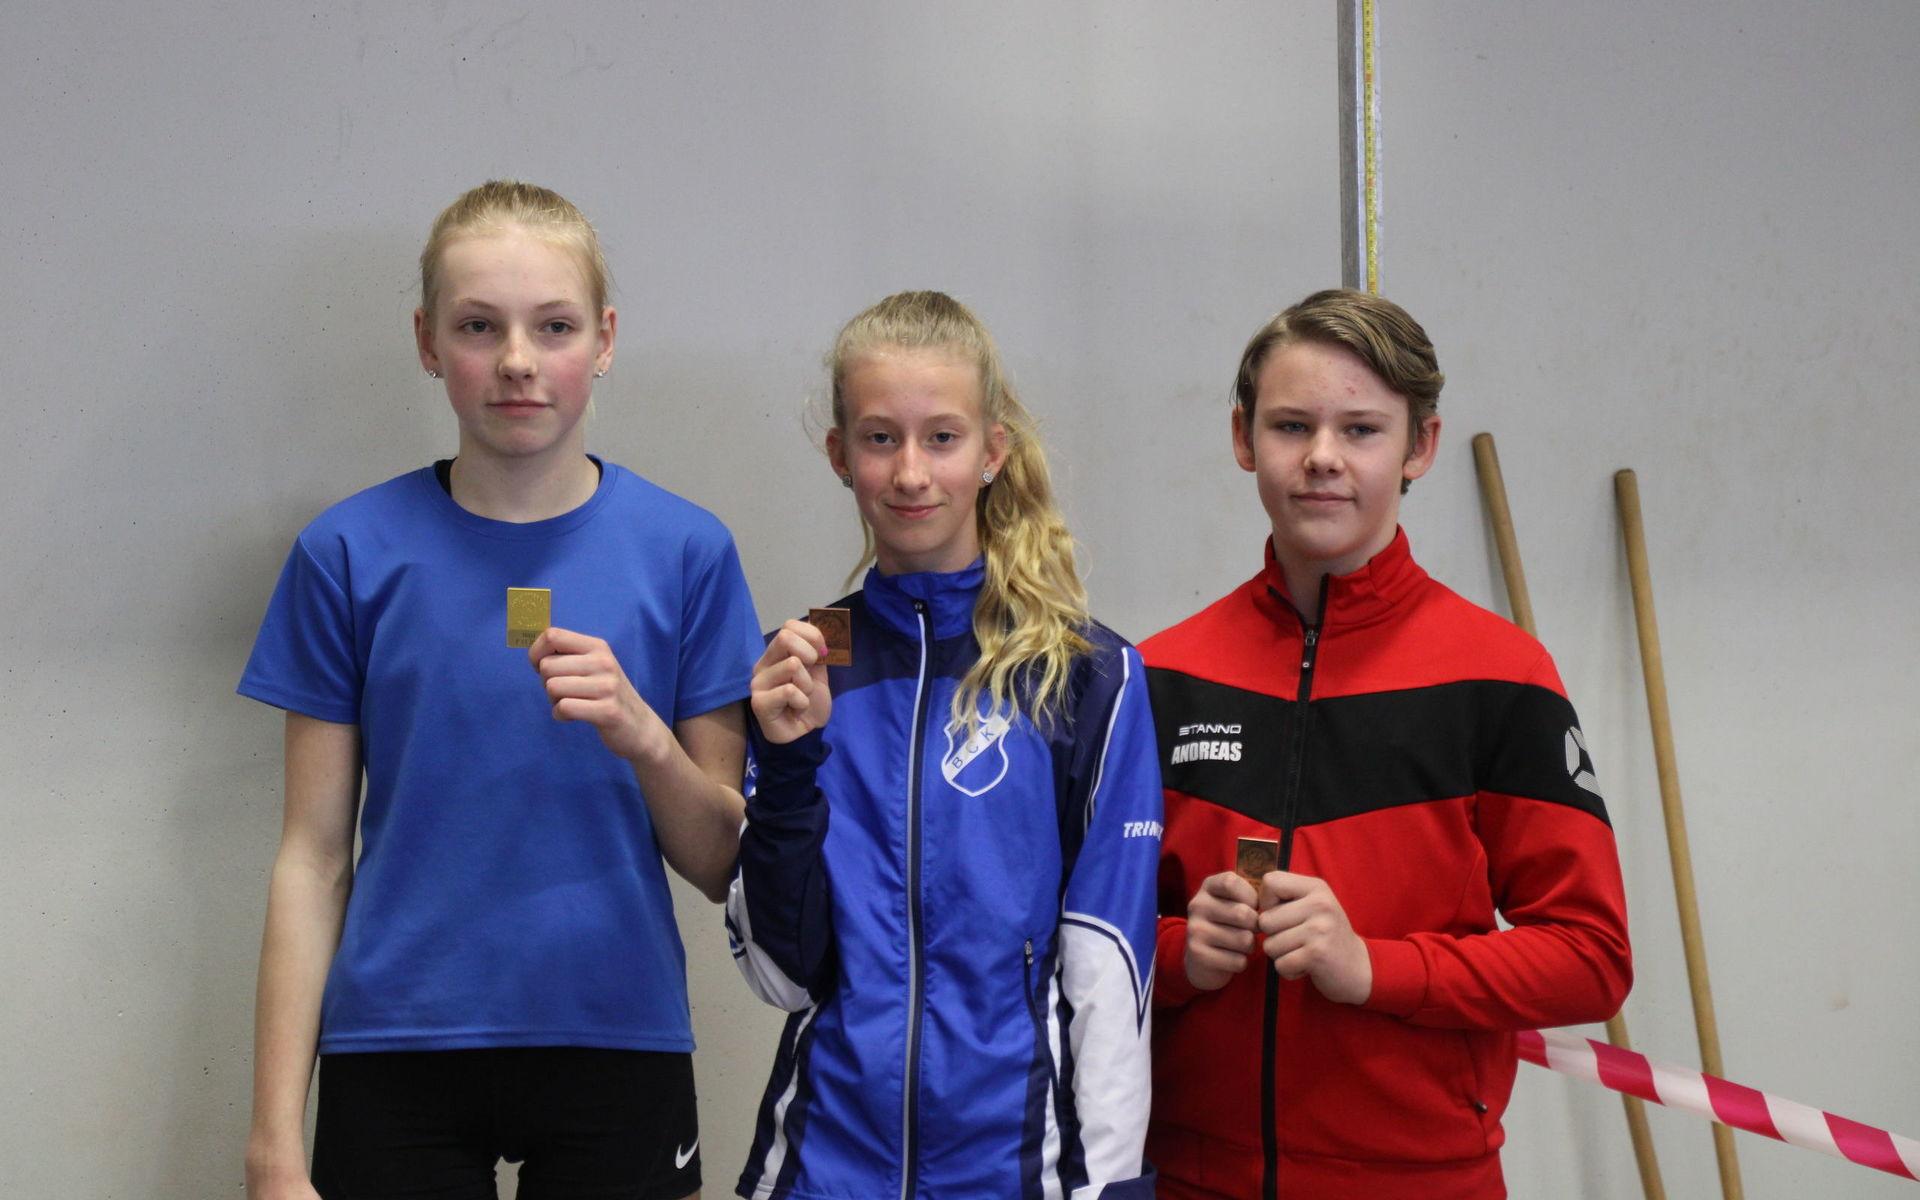 Tre medaljörer från Bohuslän-Dal: Linnea Hallsten, Dals Södra FFI, guld i F13 höjd, Agnes Vinghamre, Brattås CK, brons i F13 höjd och Andreas Nilsson, Dals Södra FFI, brons i P13 kula.